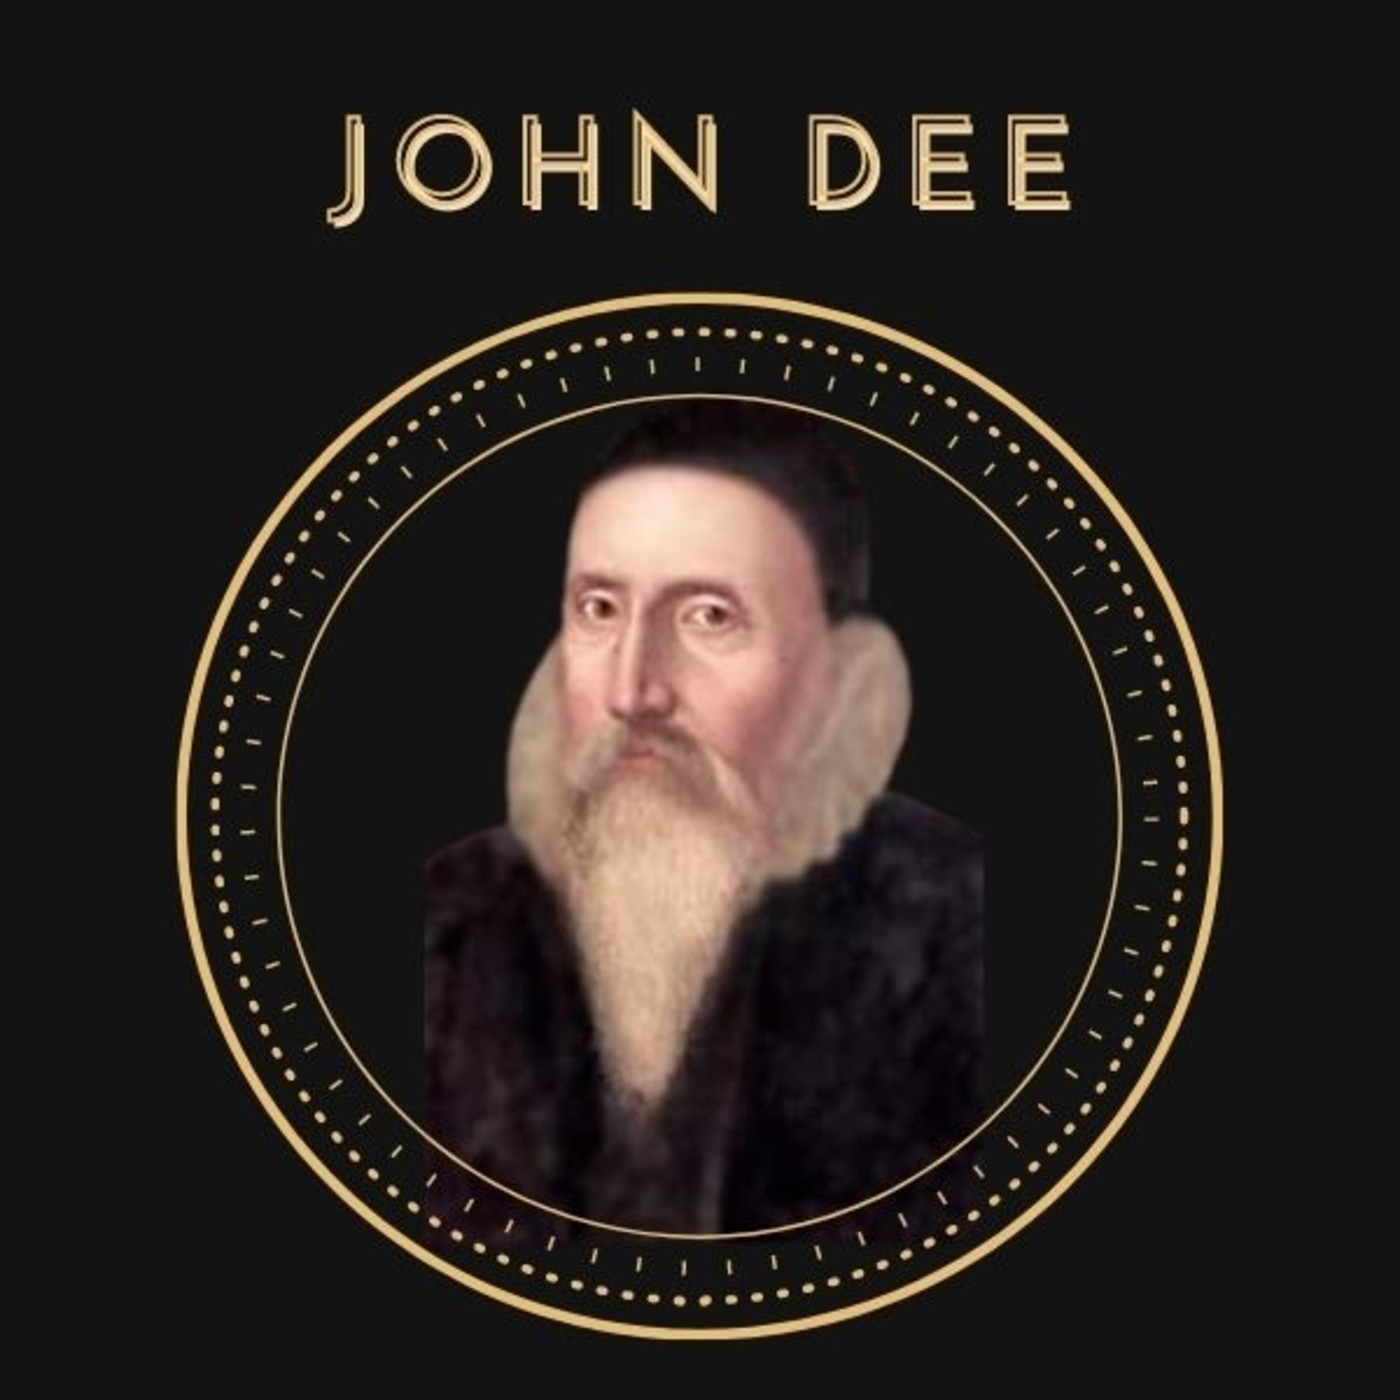 Ep. 10 Historia Oculta: John Dee. El Mago Conquistador